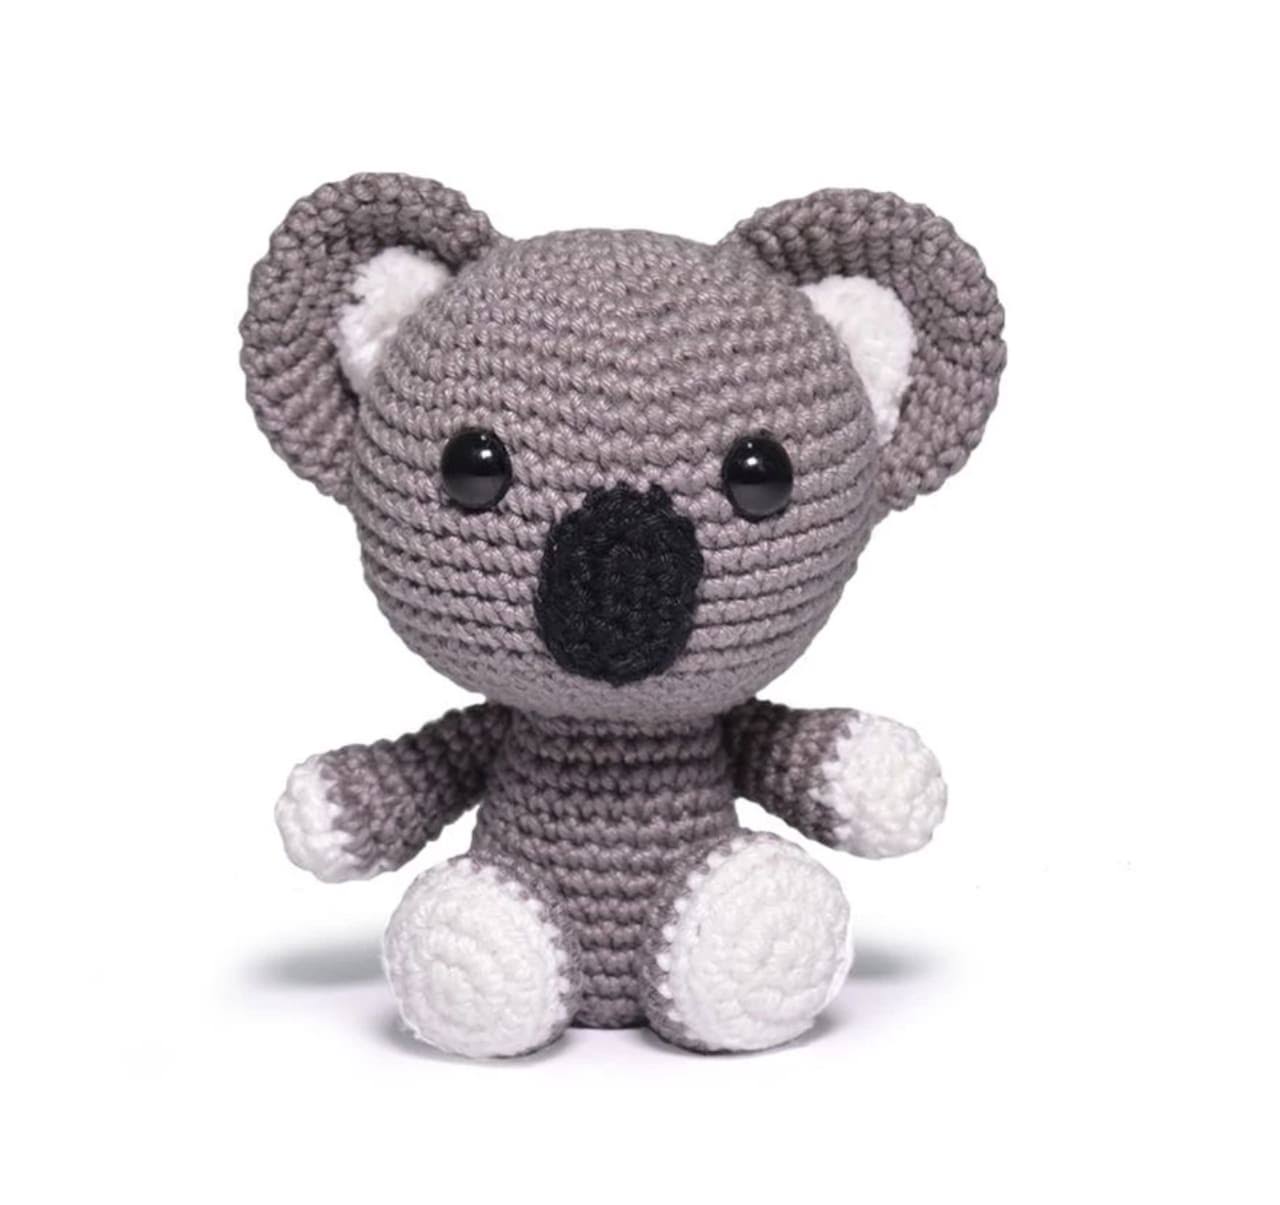 Circulo Safari Amigurumi Crochet Kit - Koala